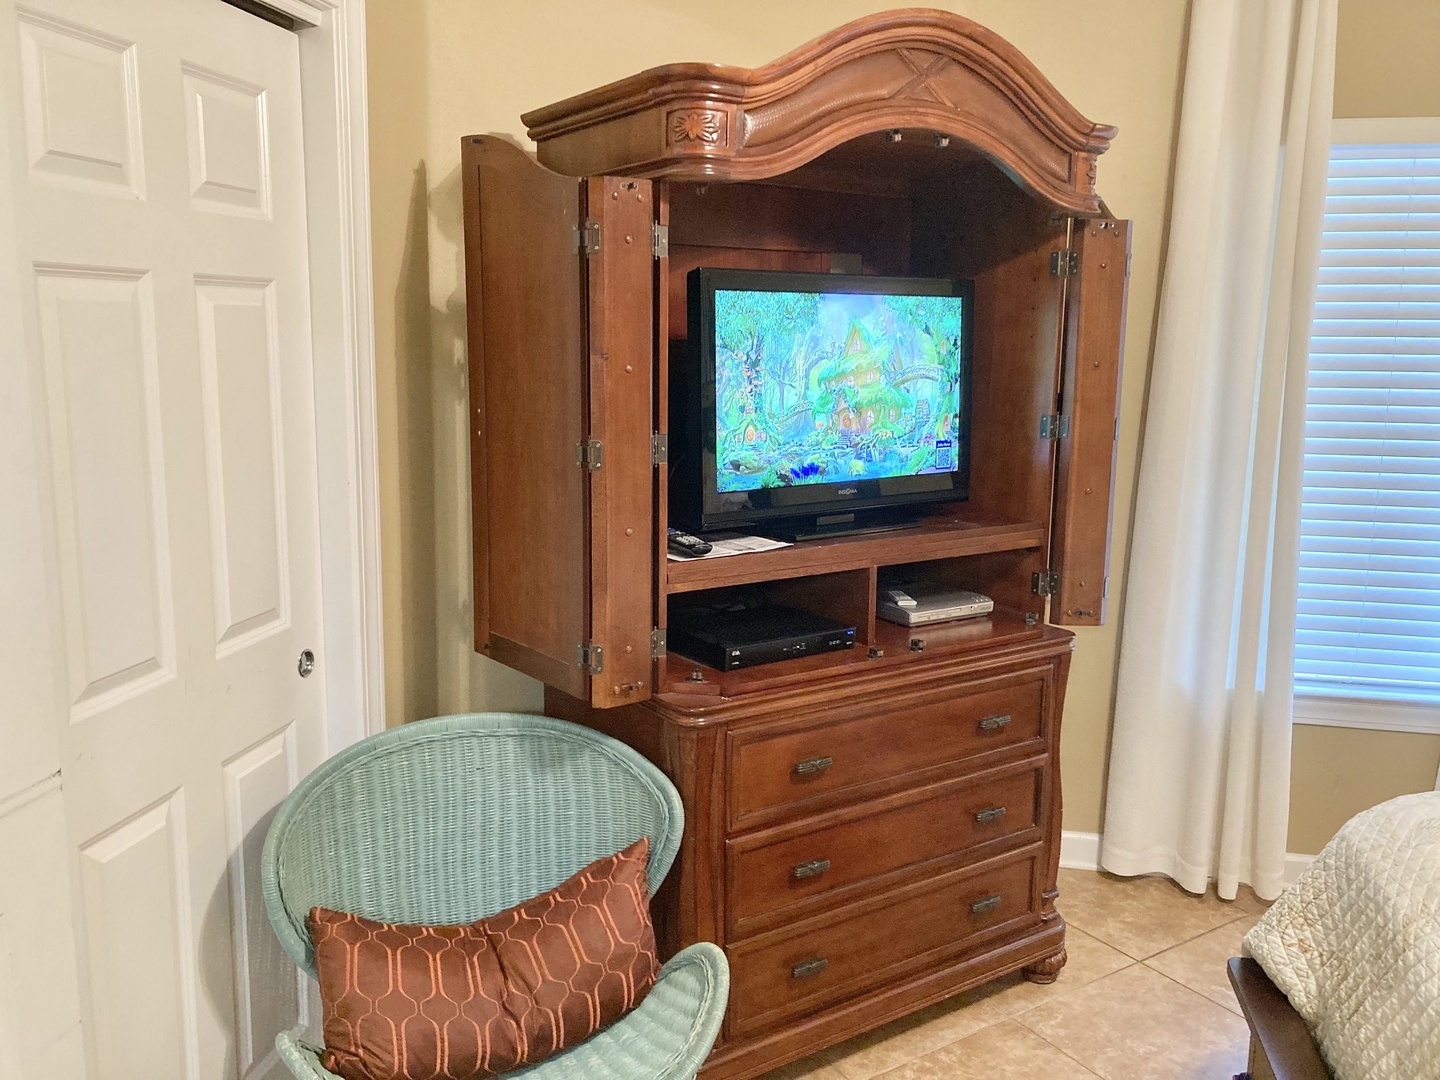 Guest bedroom tv